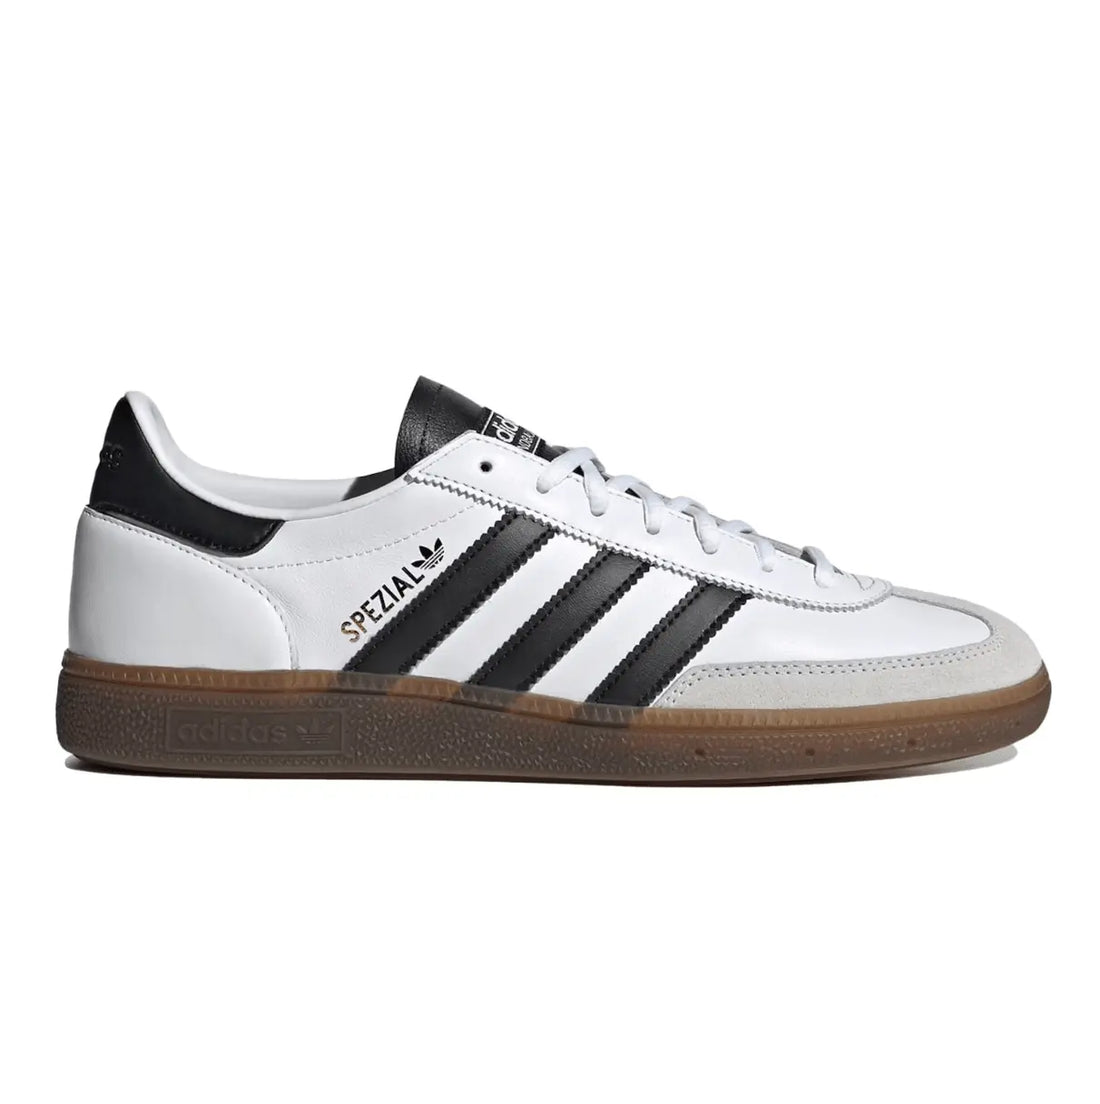 Adidas Handball Spezial White Black Gum  SA Sneakers